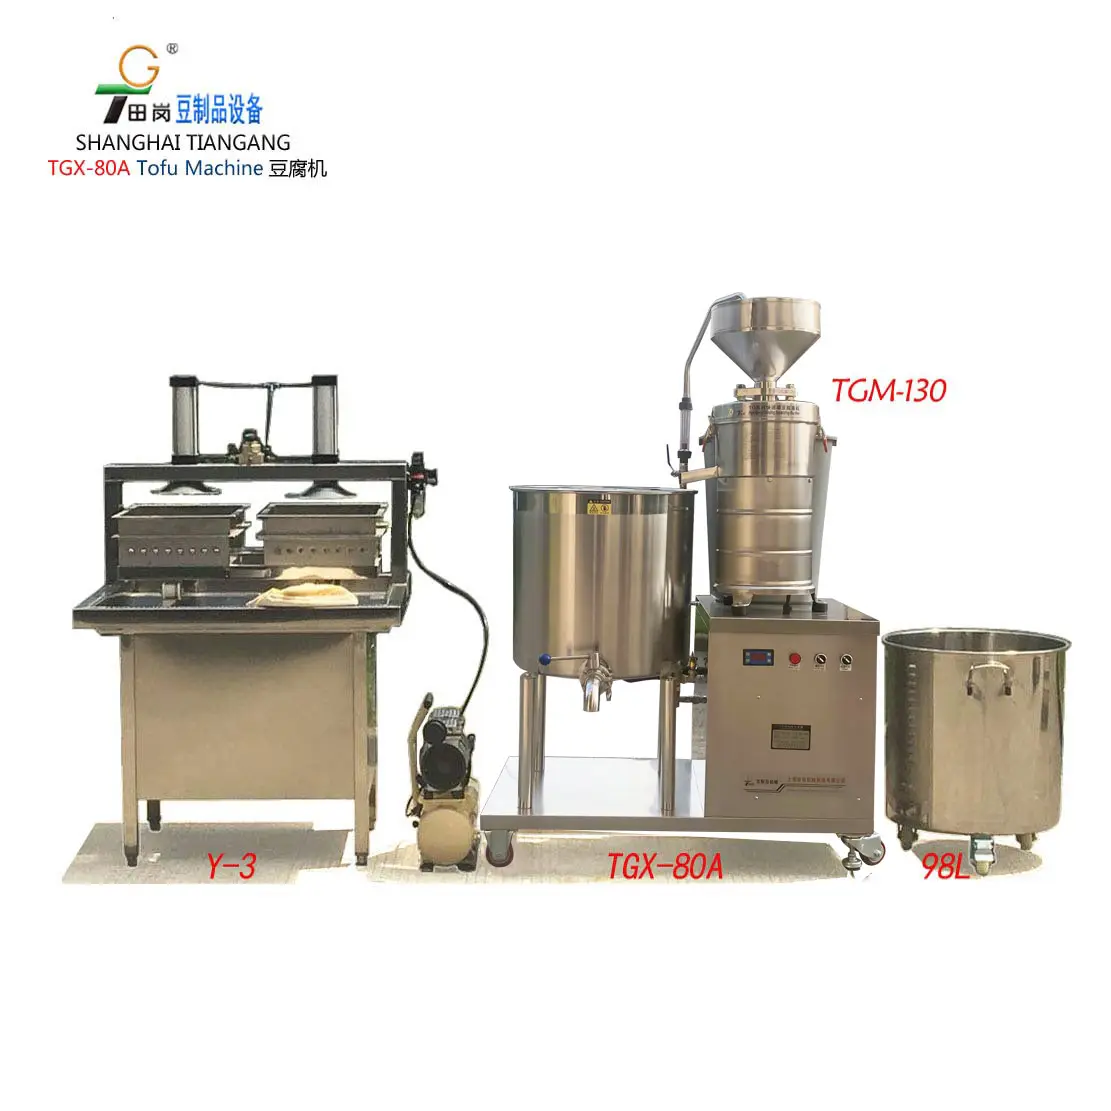 TGX-80A टोफू मशीन/सोया दूध मशीन/छोटे टोफू निर्माता